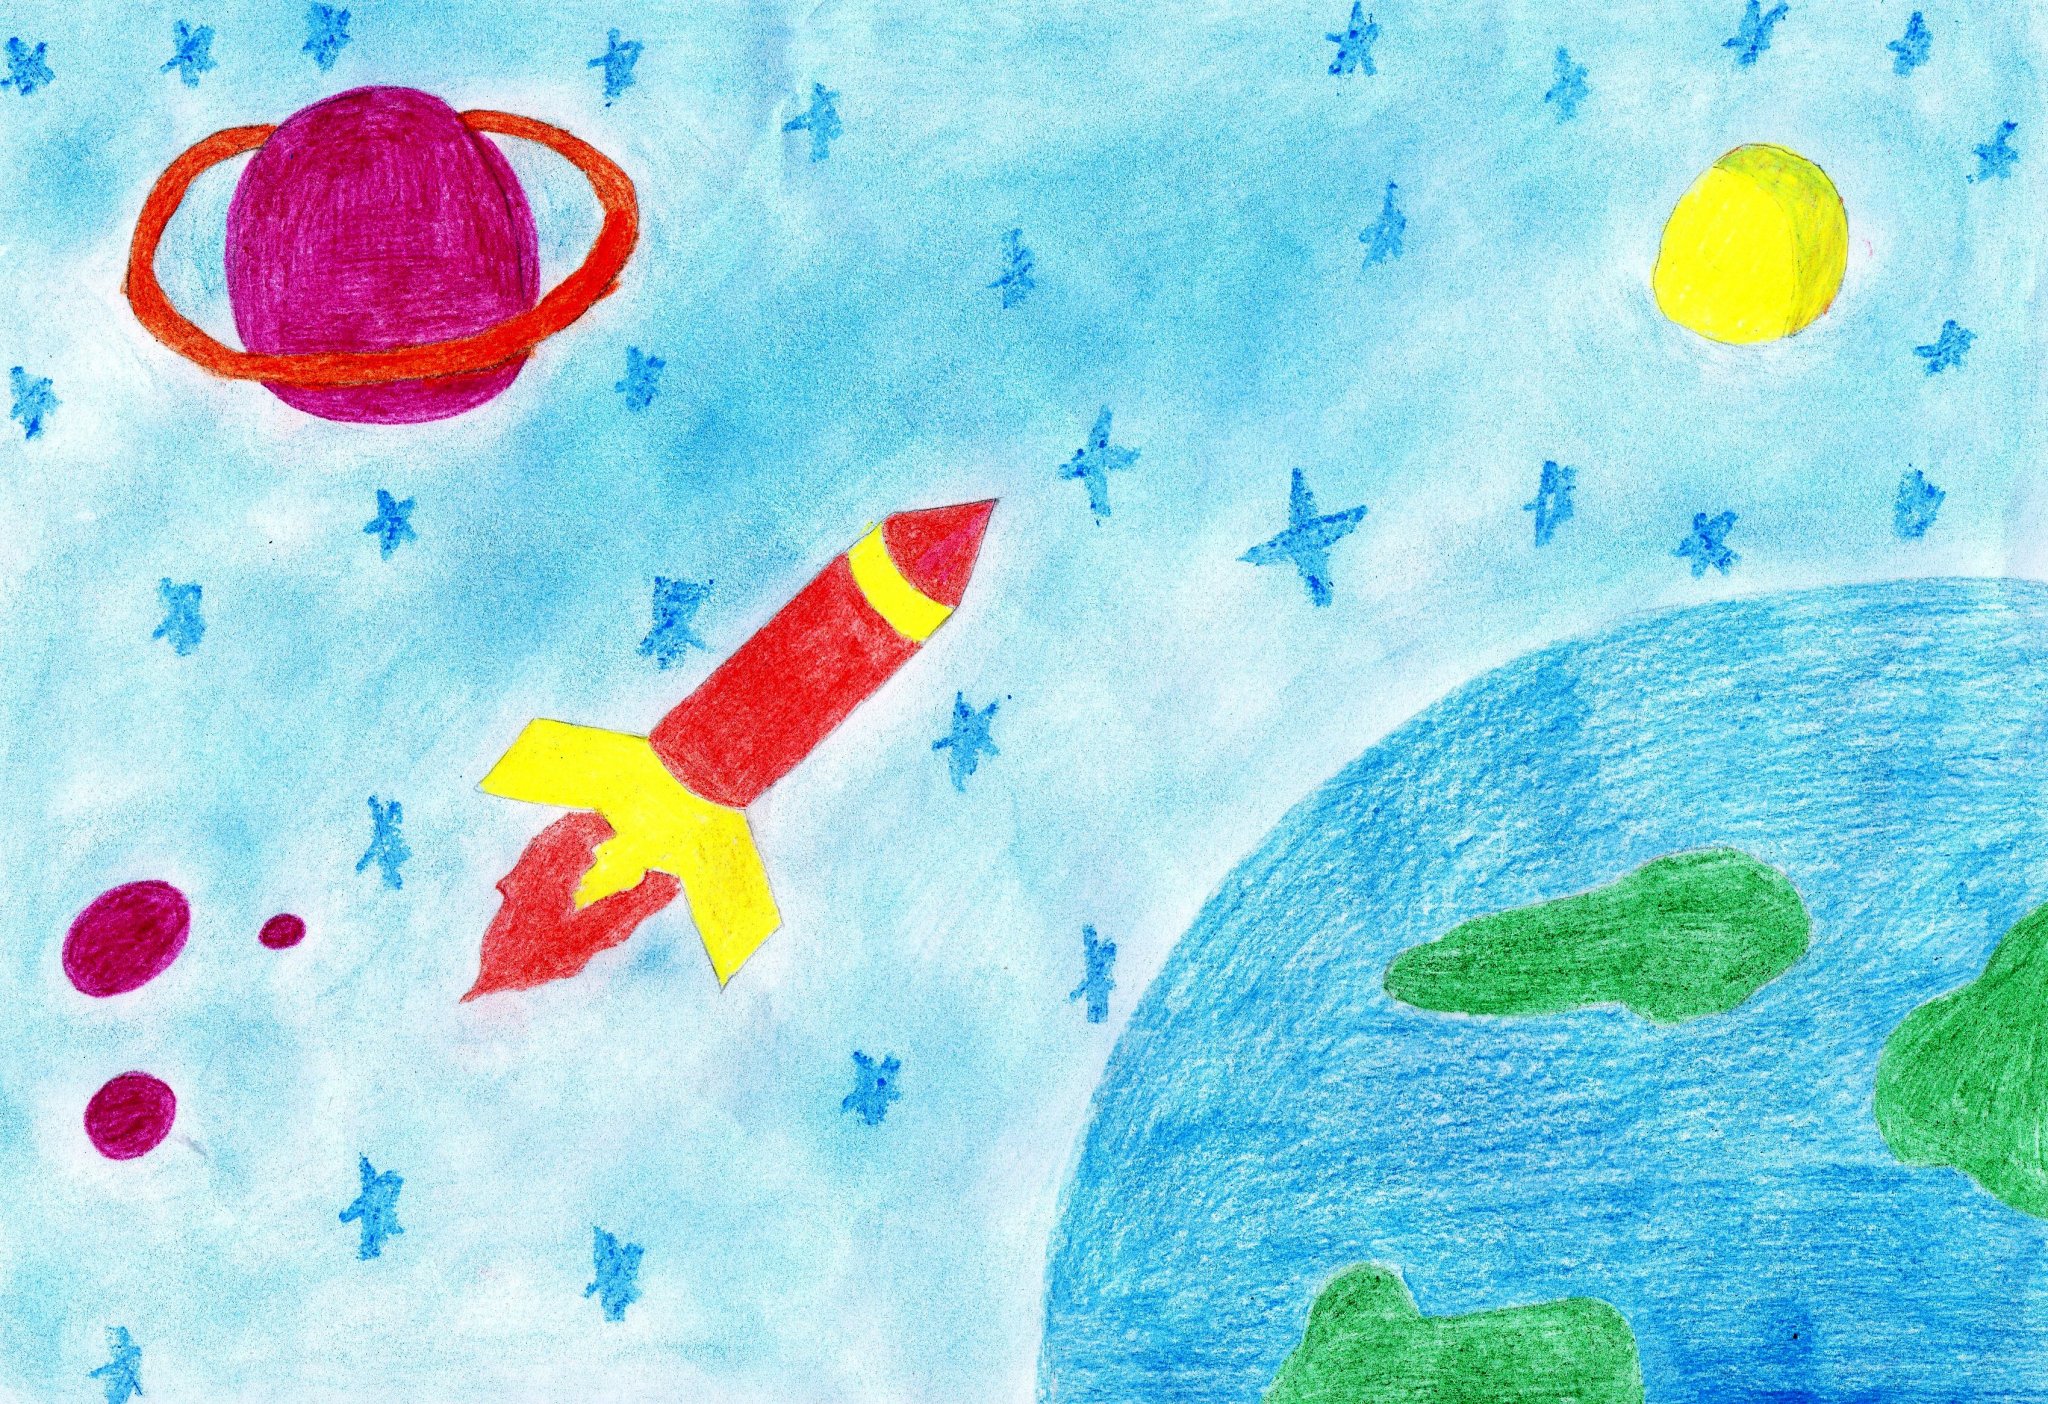 Рисование на тему космос в детском саду